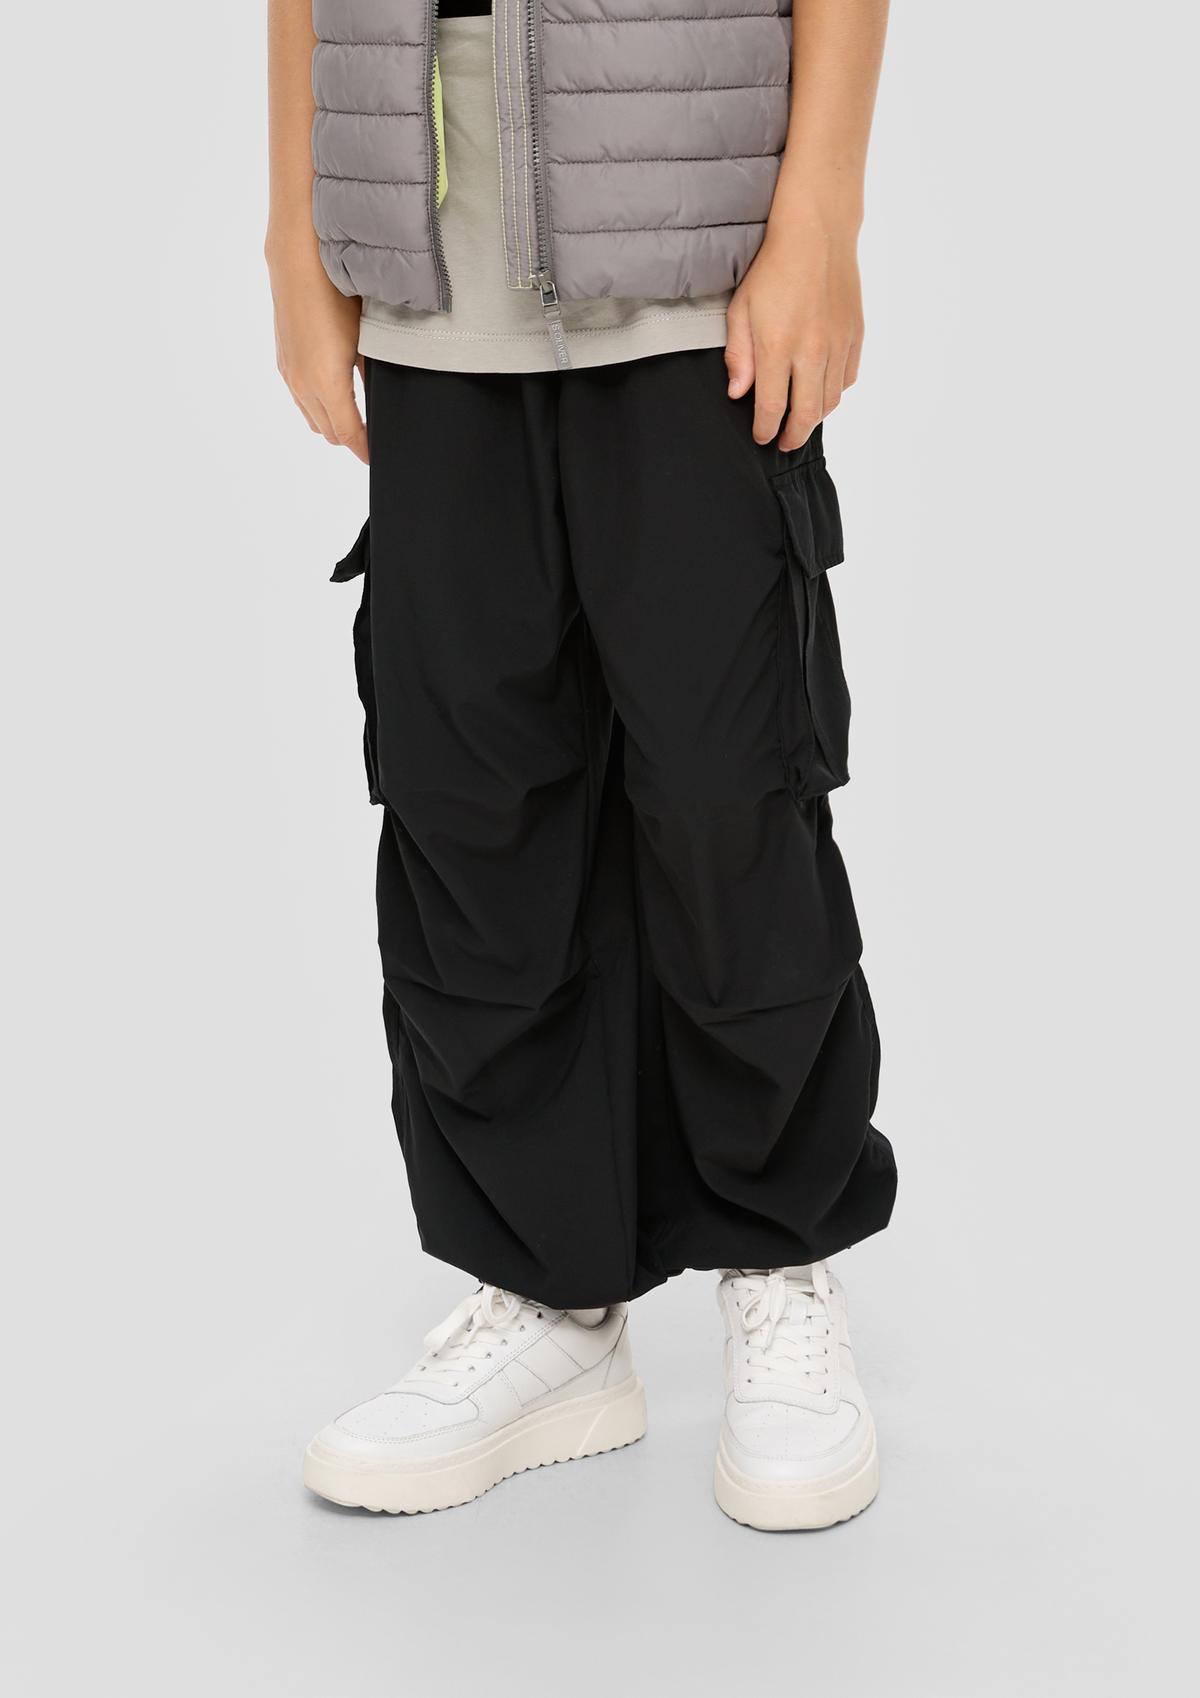 Loose: hlače v slogu z velikimi žepi